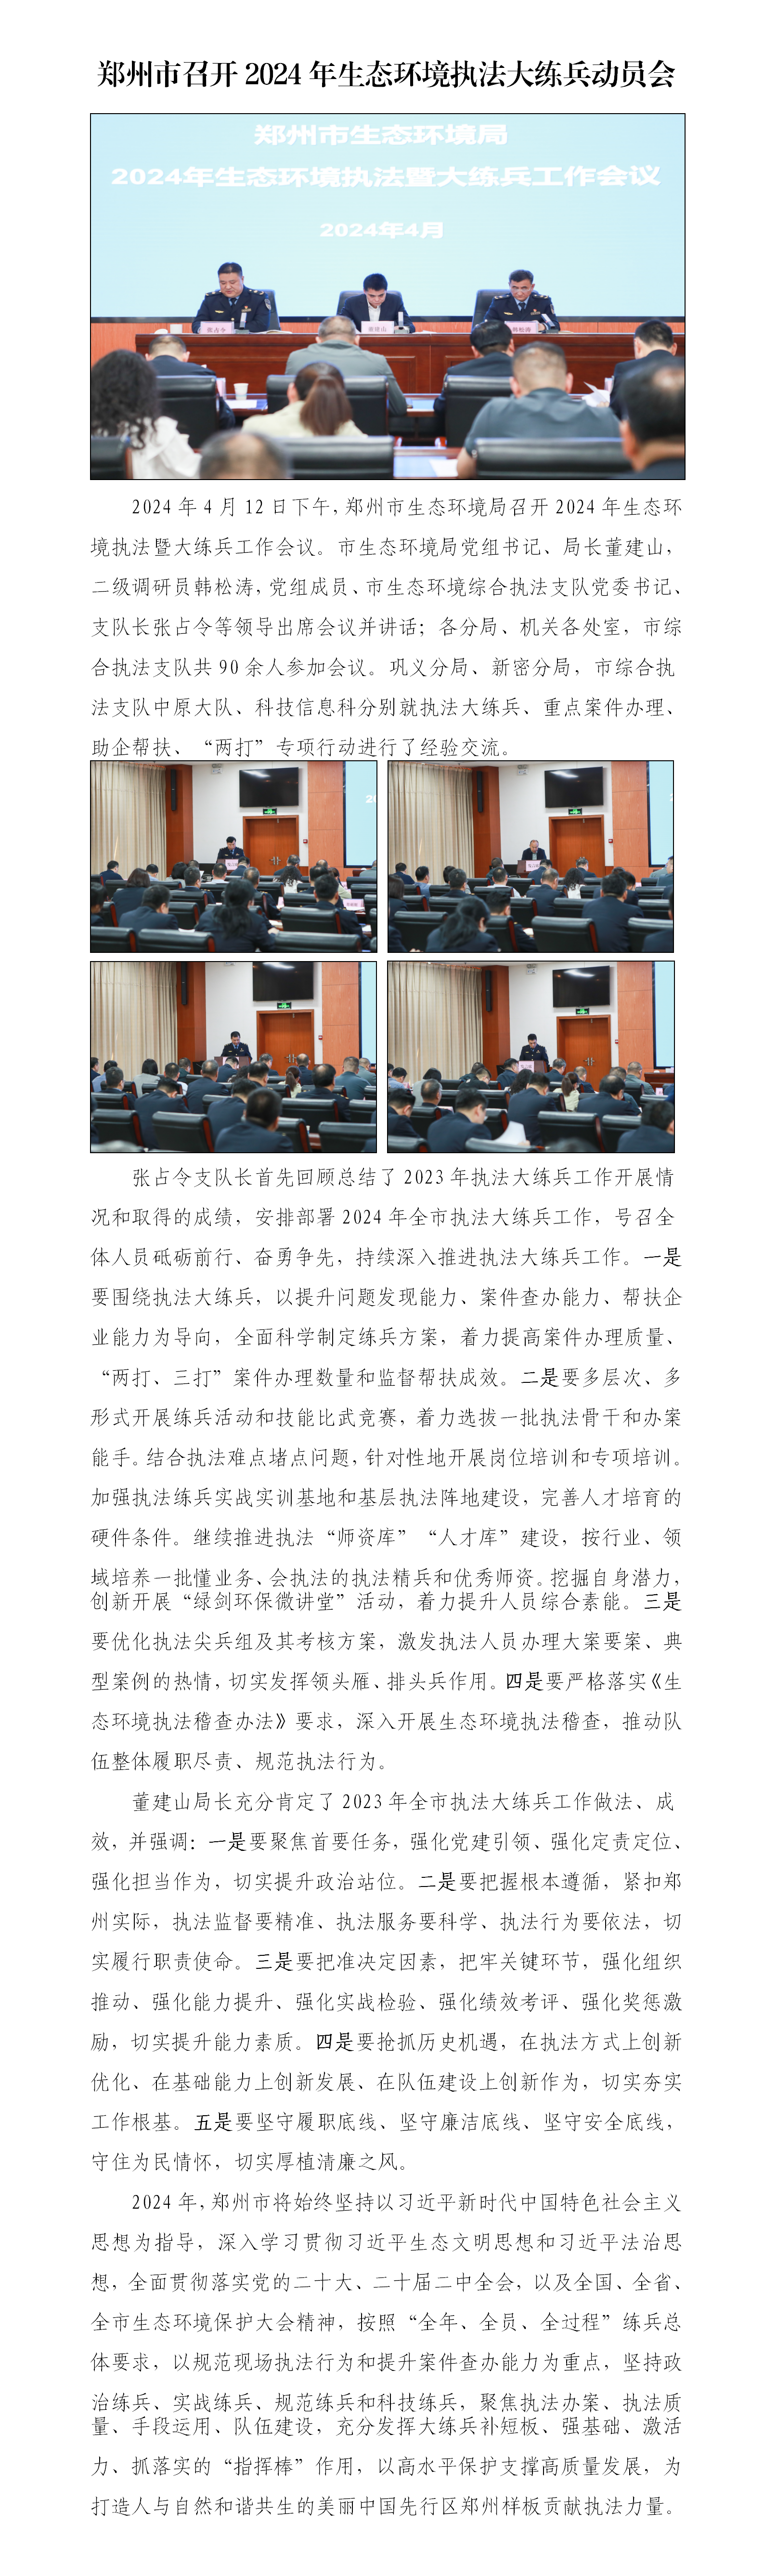 第7期 郑州市召开2024年生态环境执法大练兵动员会_01.png